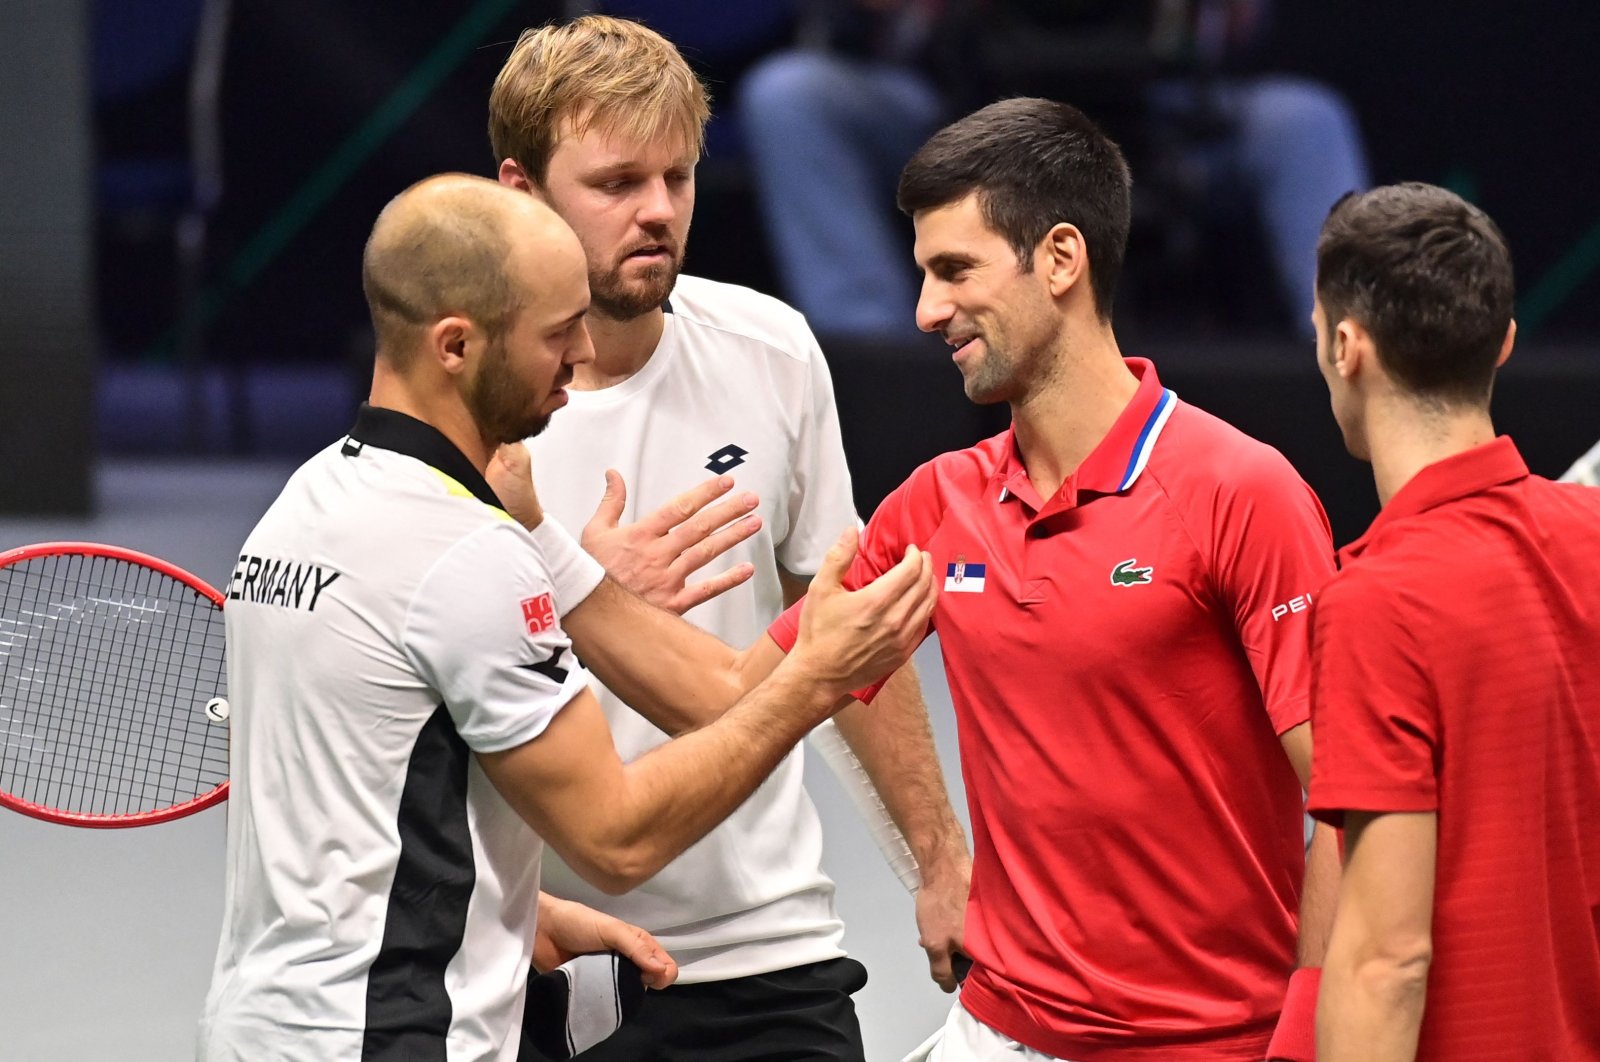 Jerman mengejutkan Serbia Djokovic, Medvedev memimpin dalam kemenangan Rusia